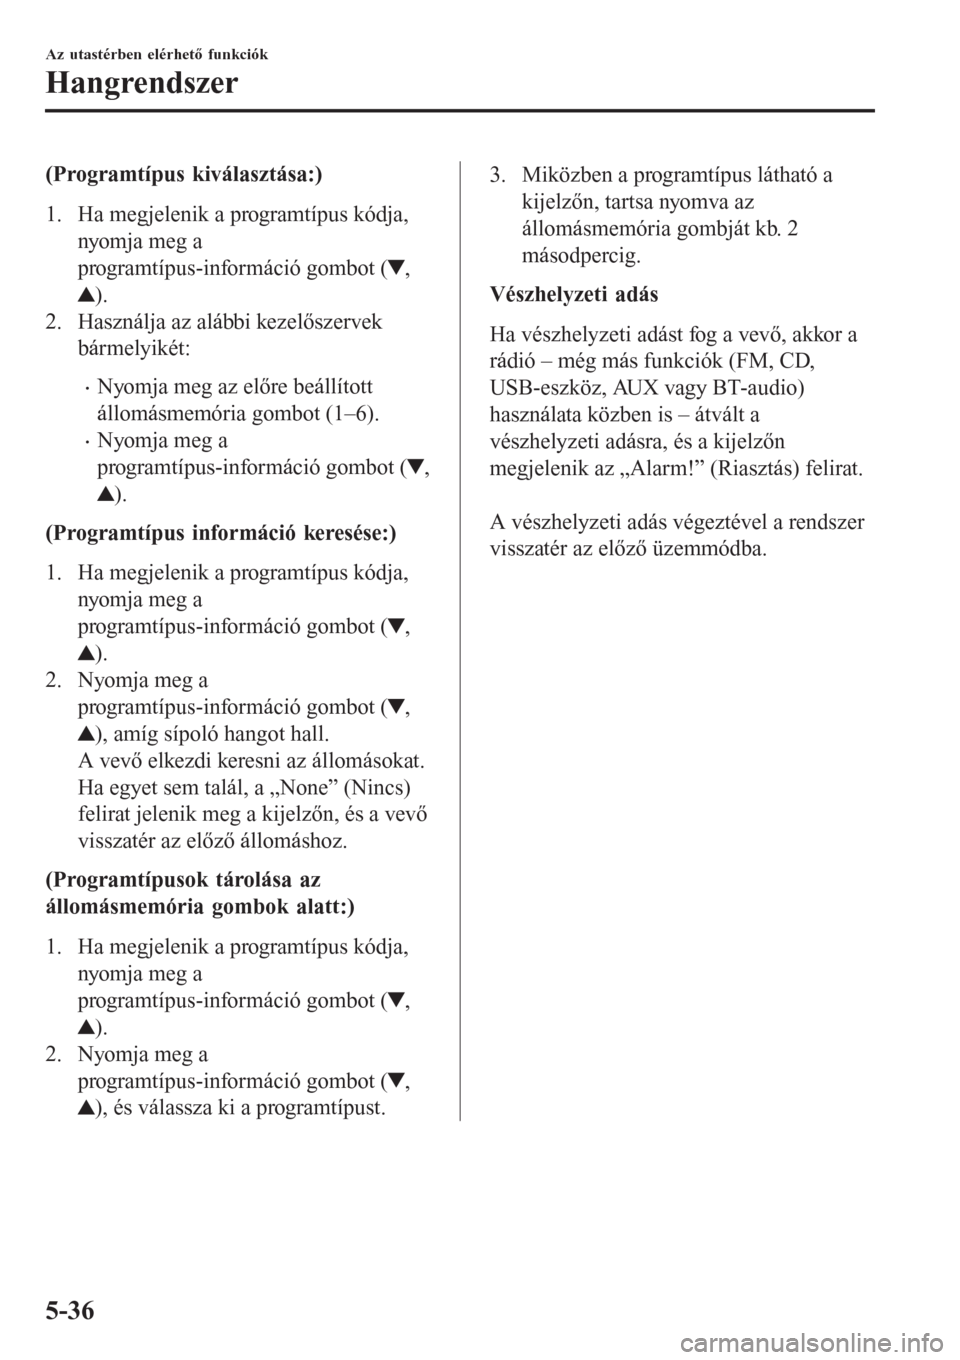 MAZDA MODEL 6 2016  Kezelési útmutató (in Hungarian) (Programtípus kiválasztása:)
1. Ha megjelenik a programtípus kódja,
nyomja meg a
programtípus-információ gombot (
,
).
2. Használja az alábbi kezelőszervek
bármelyikét:
•Nyomja meg az e